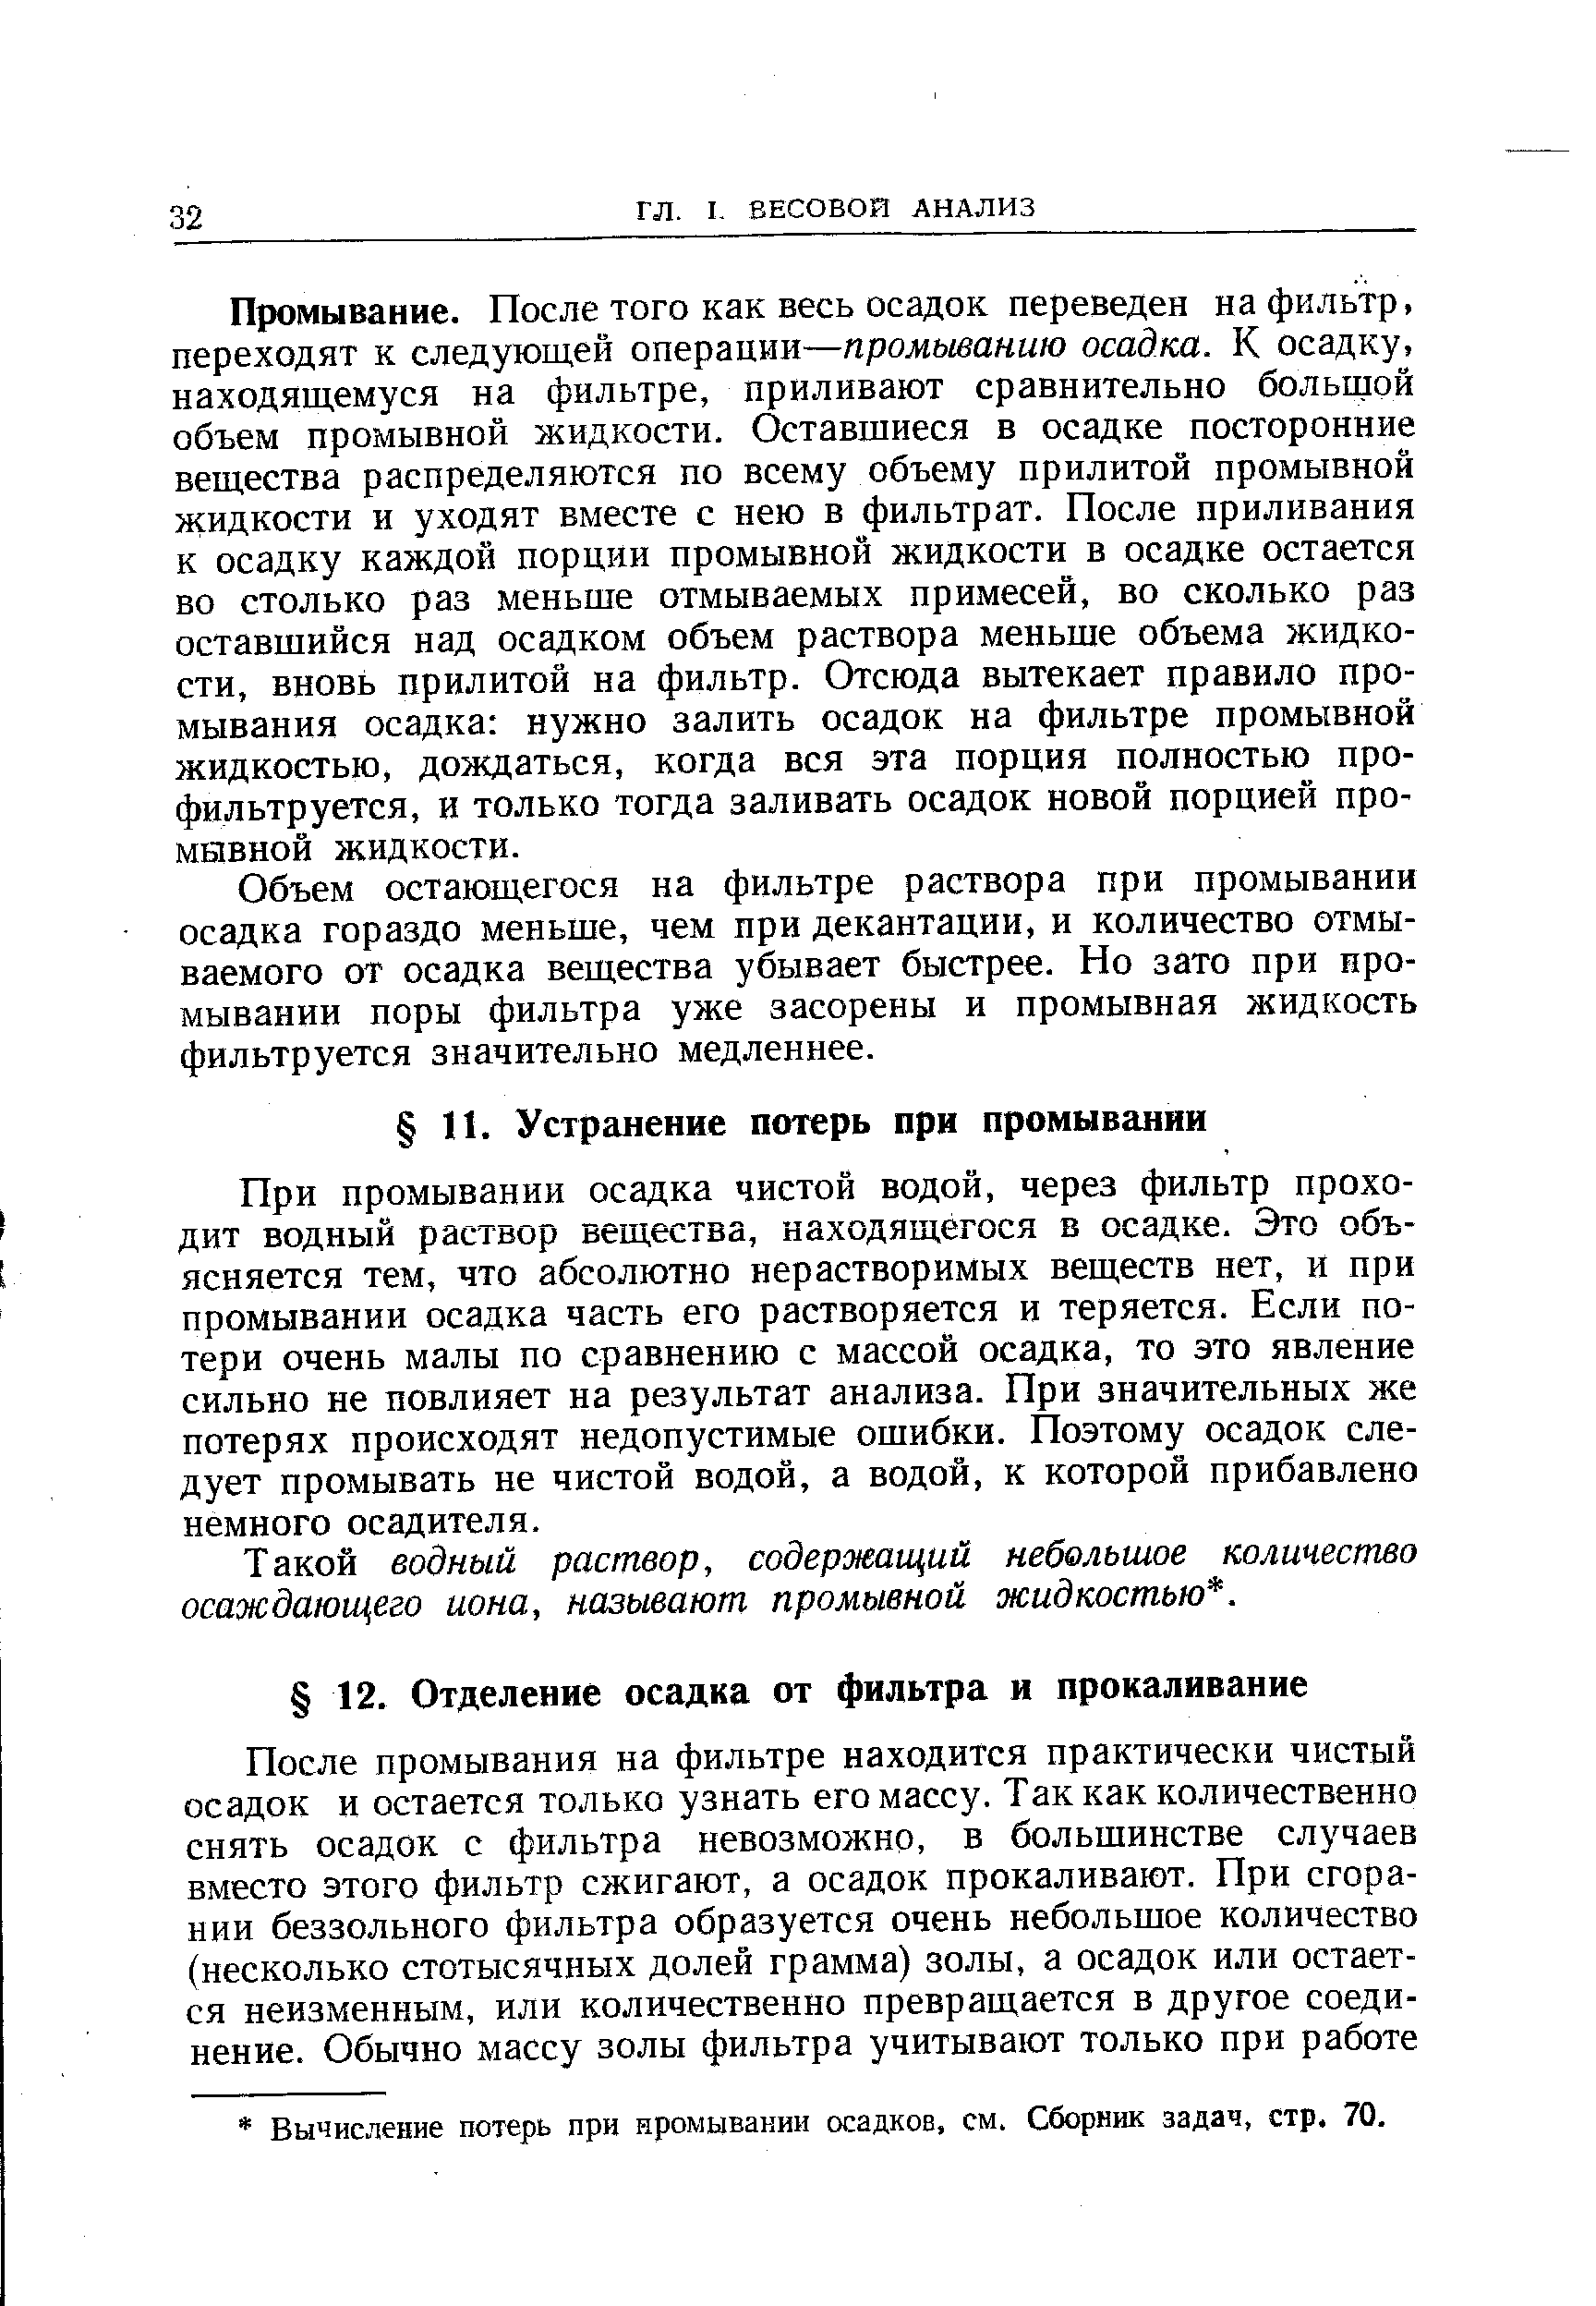 Вычисление потерь при промывании осадков, см. Сборник задач, стр. 70.